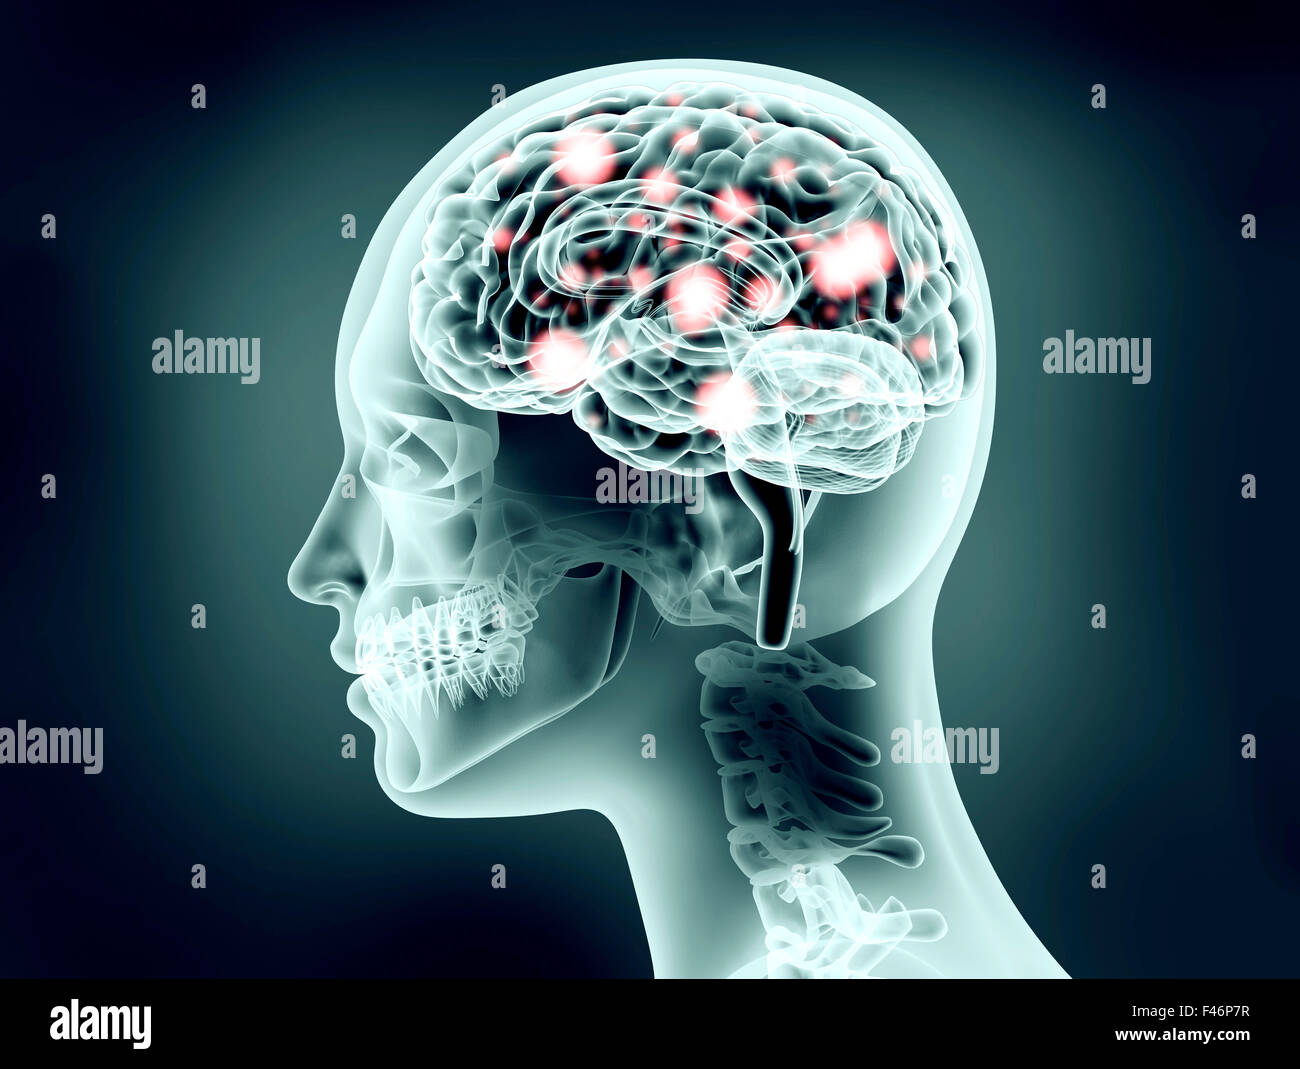 X-ray image de tête humaine avec cerveau et impulsions électriques Banque D'Images